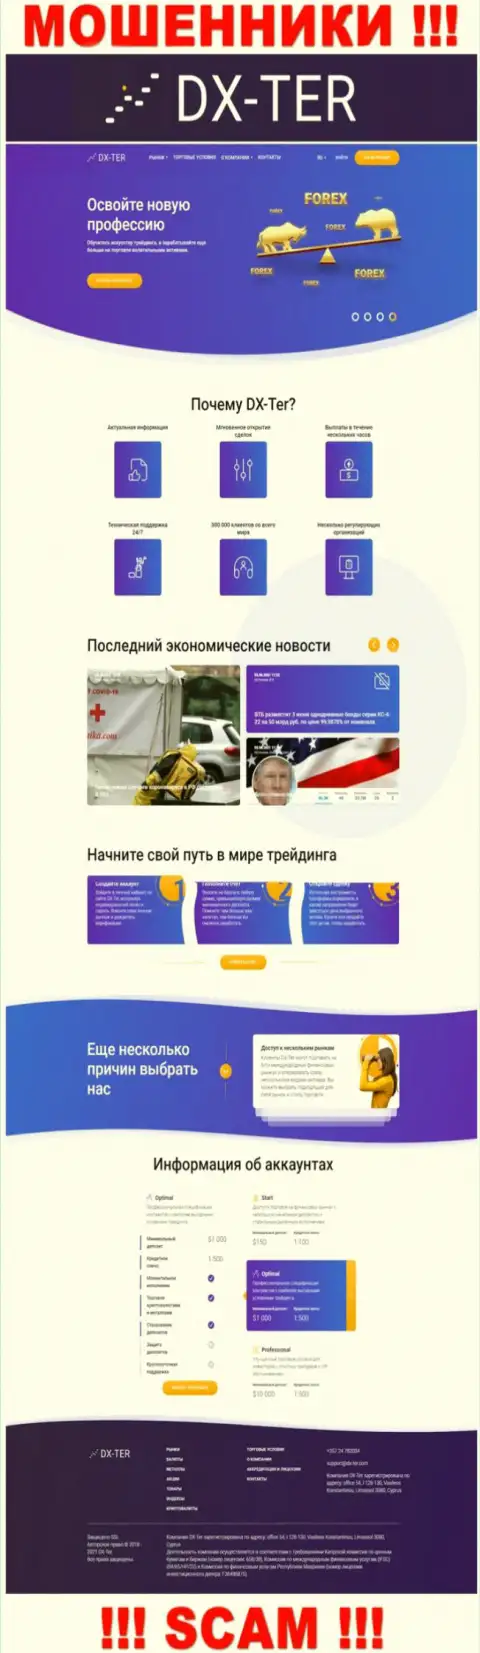 Разбор информационного сервиса мошенников ДХ-Тер Ком